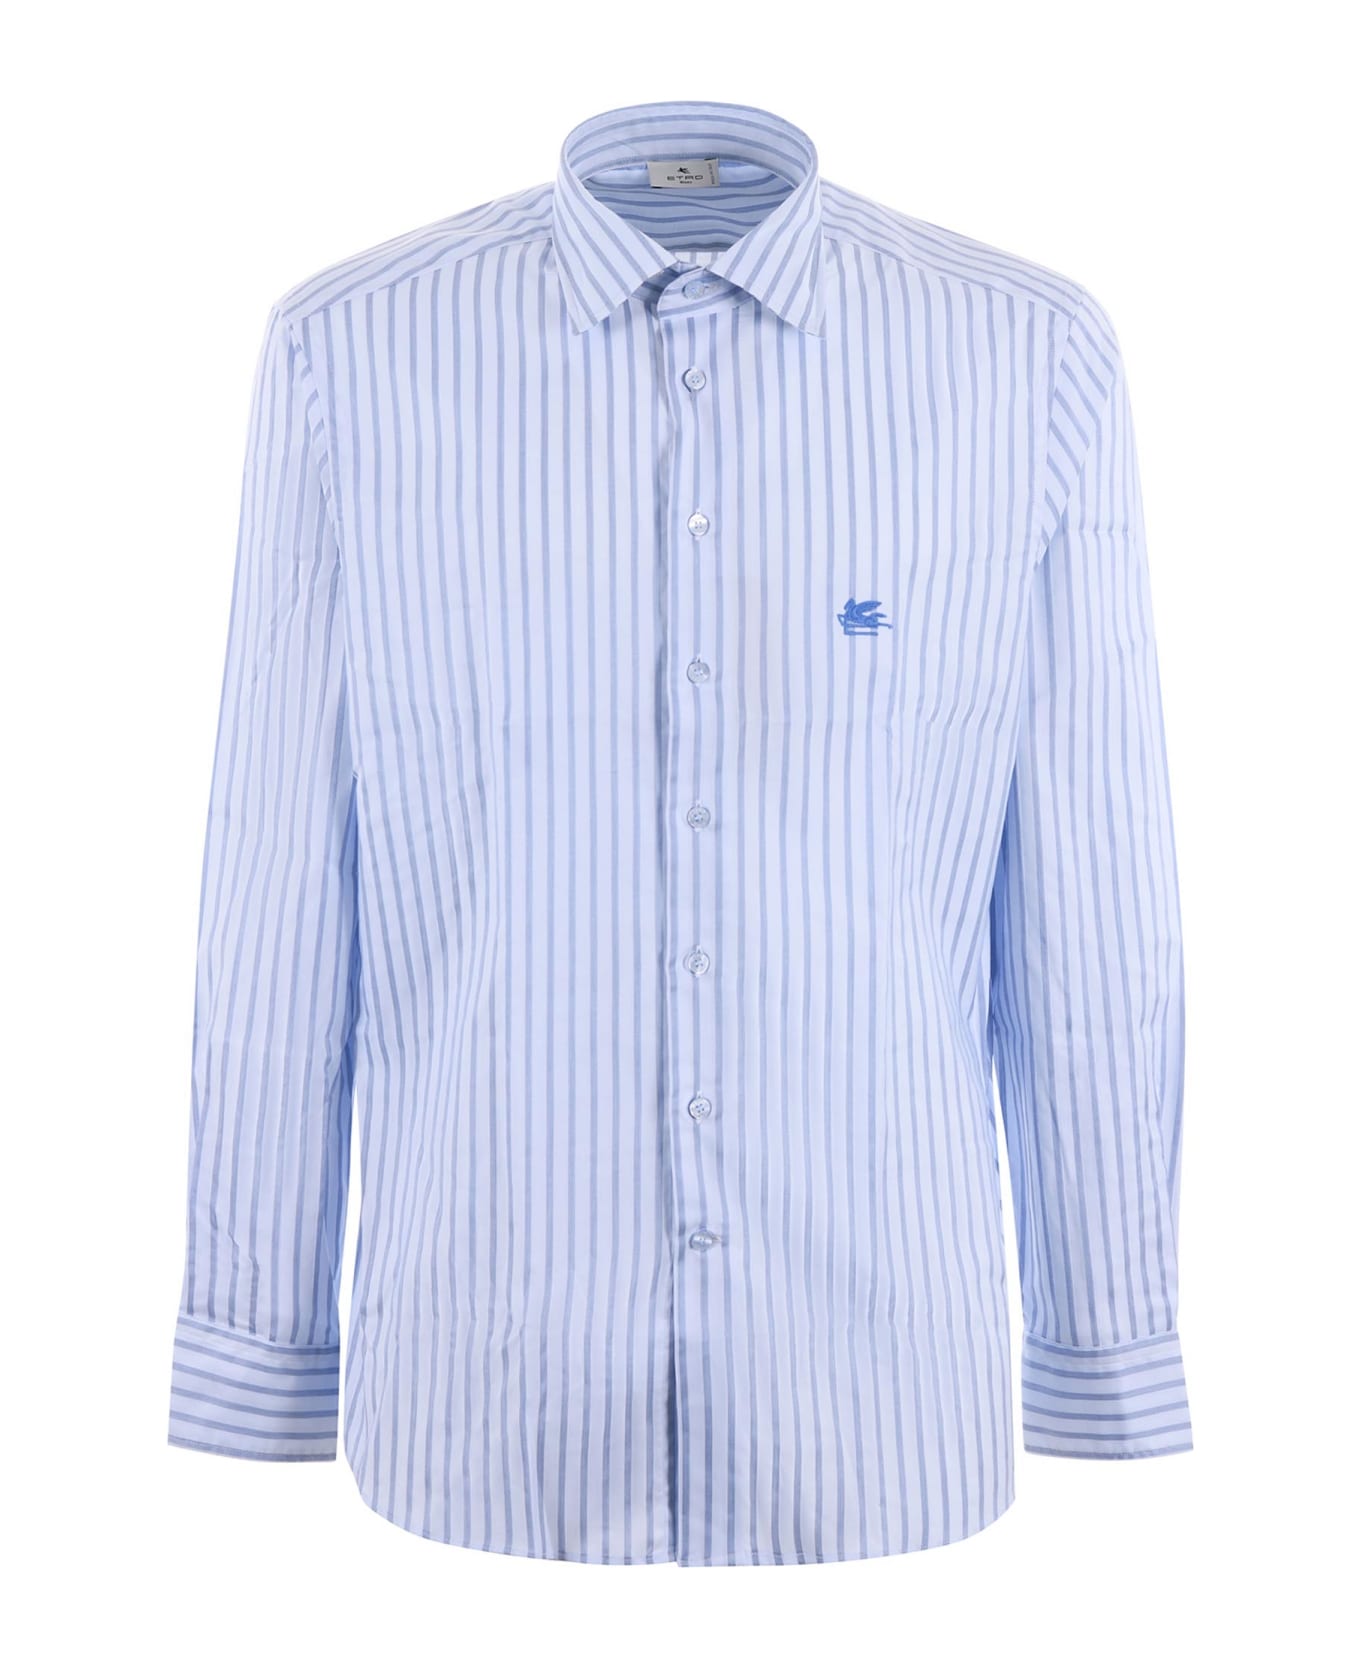 Etro White\/light Blue Striped Long Sleeved Shirt - Celeste シャツ